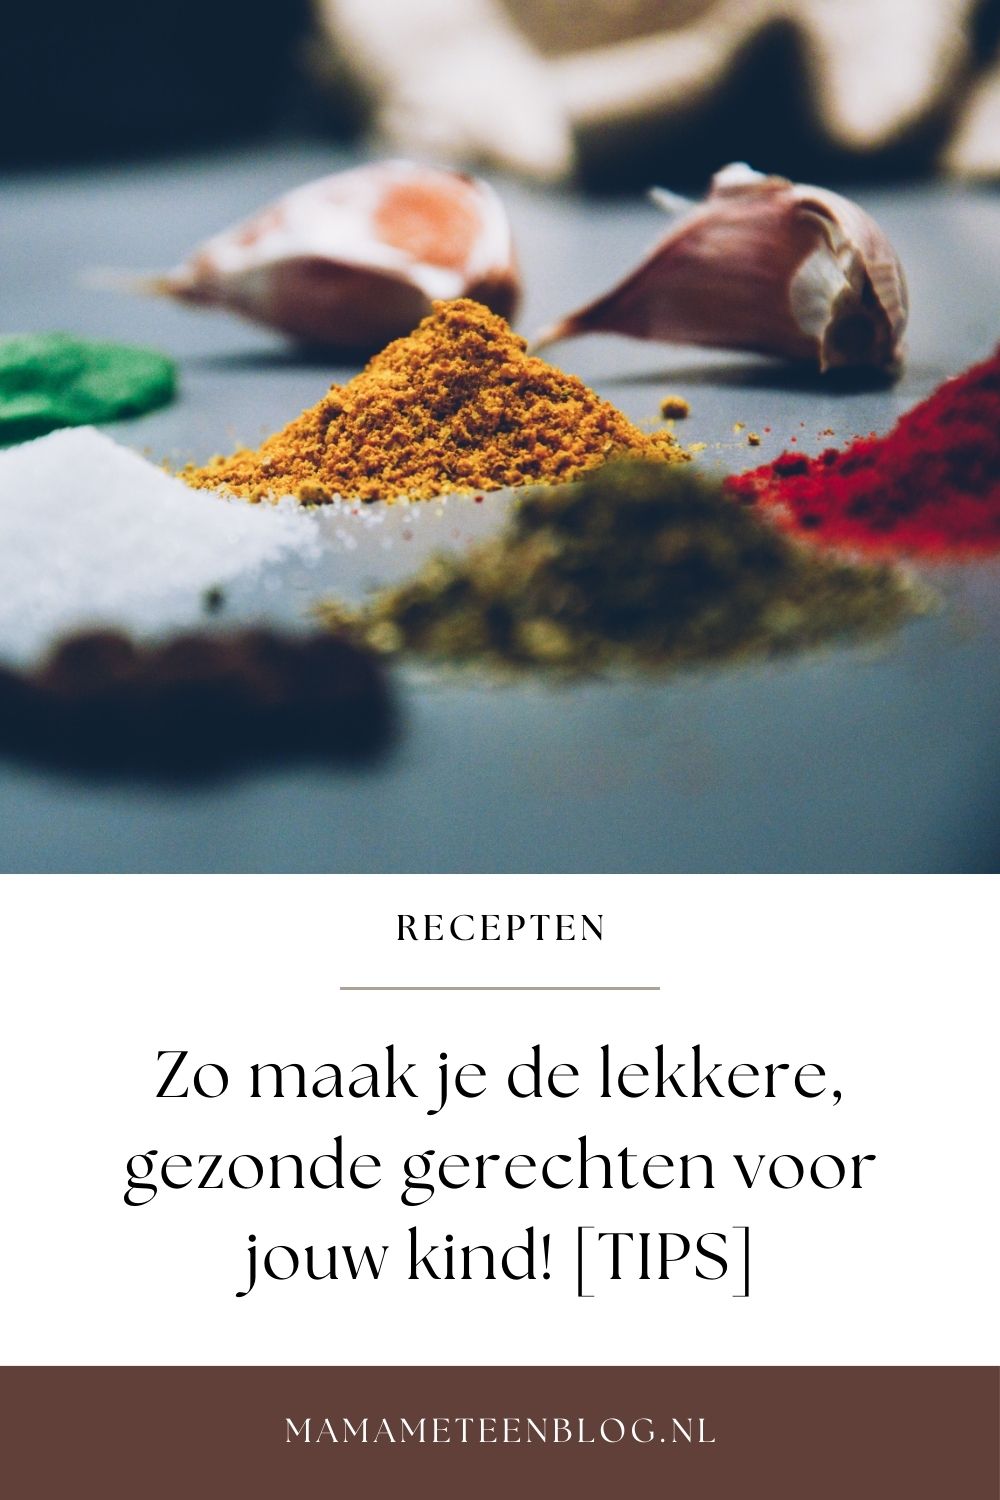 lekkere, gezonde gerechten voor jouw kind mamameteenblog.nl